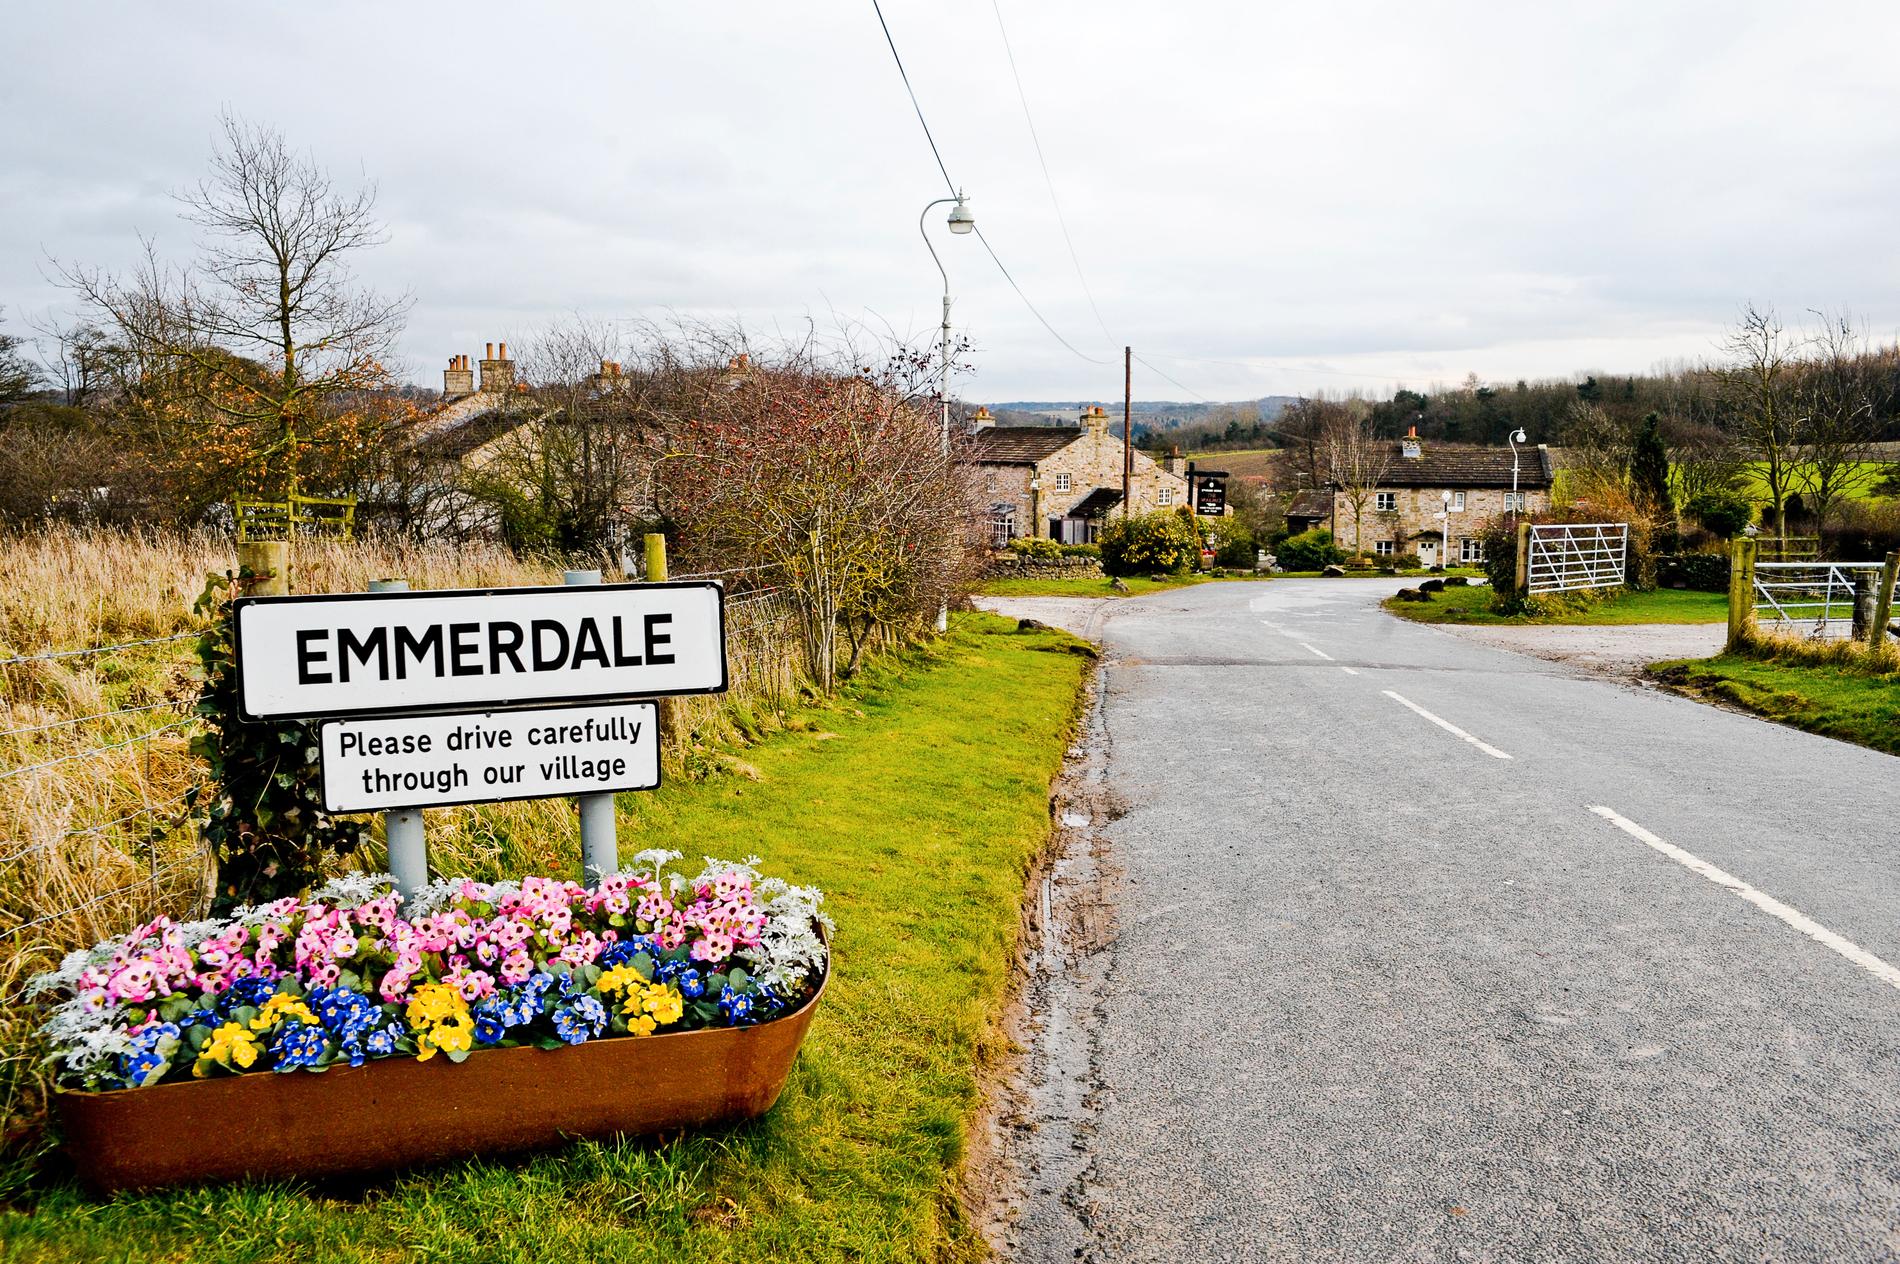 "Hem till gården" utspelar sig i det fiktiva samhället Emmerdale, vilket också är det engelska namnet på serien. Arkivbild.